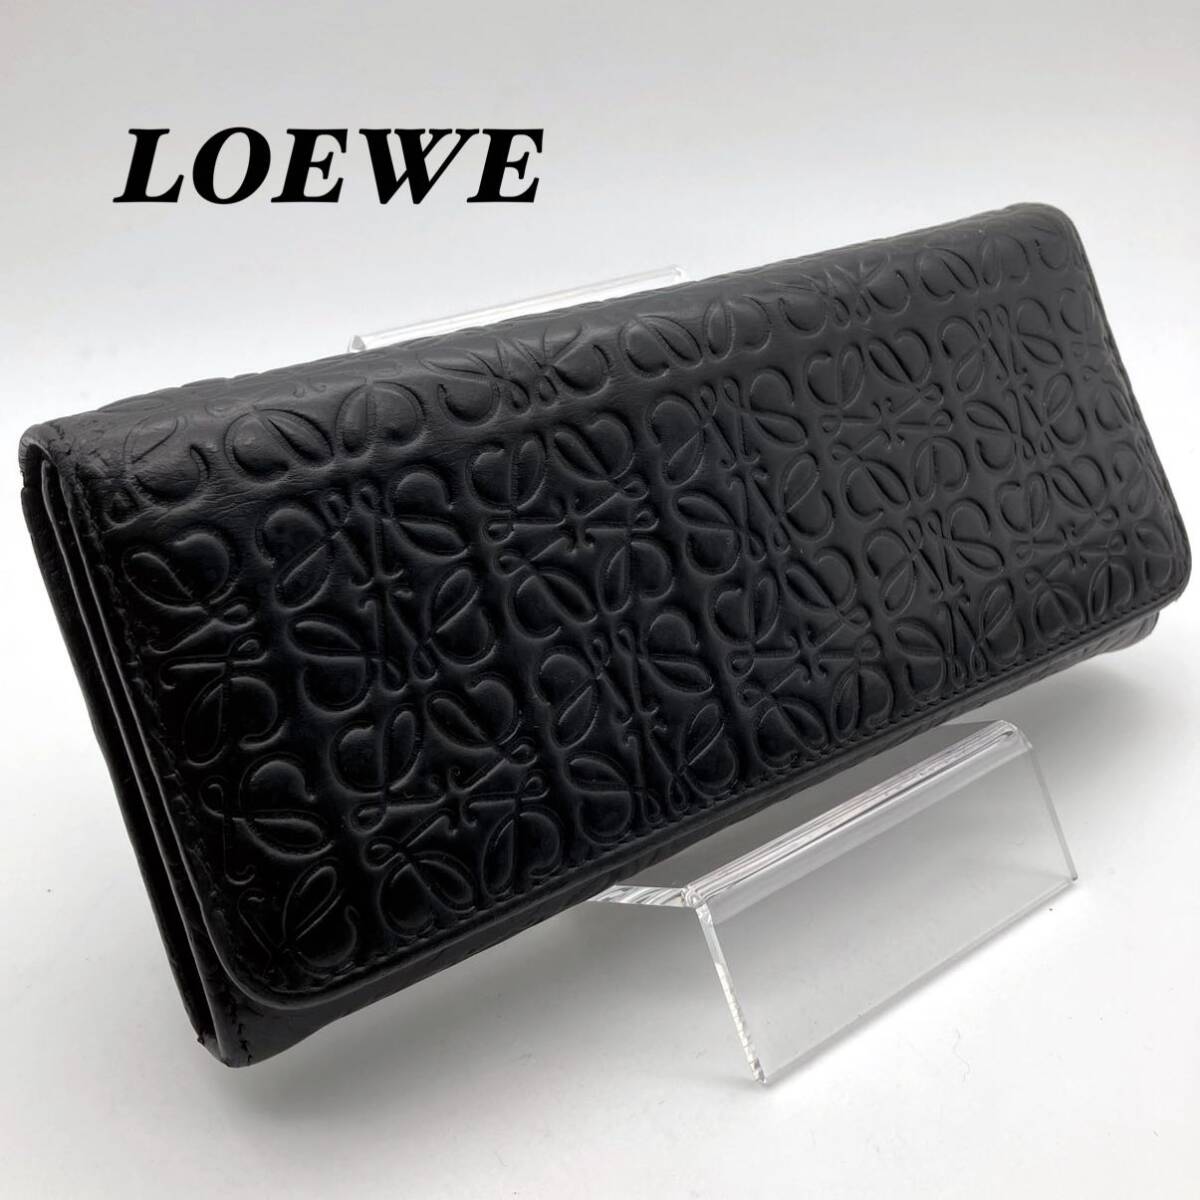 LOEWE ロエベ 長財布 型押しレザー リピートアナグラム ブラック 黒の画像1